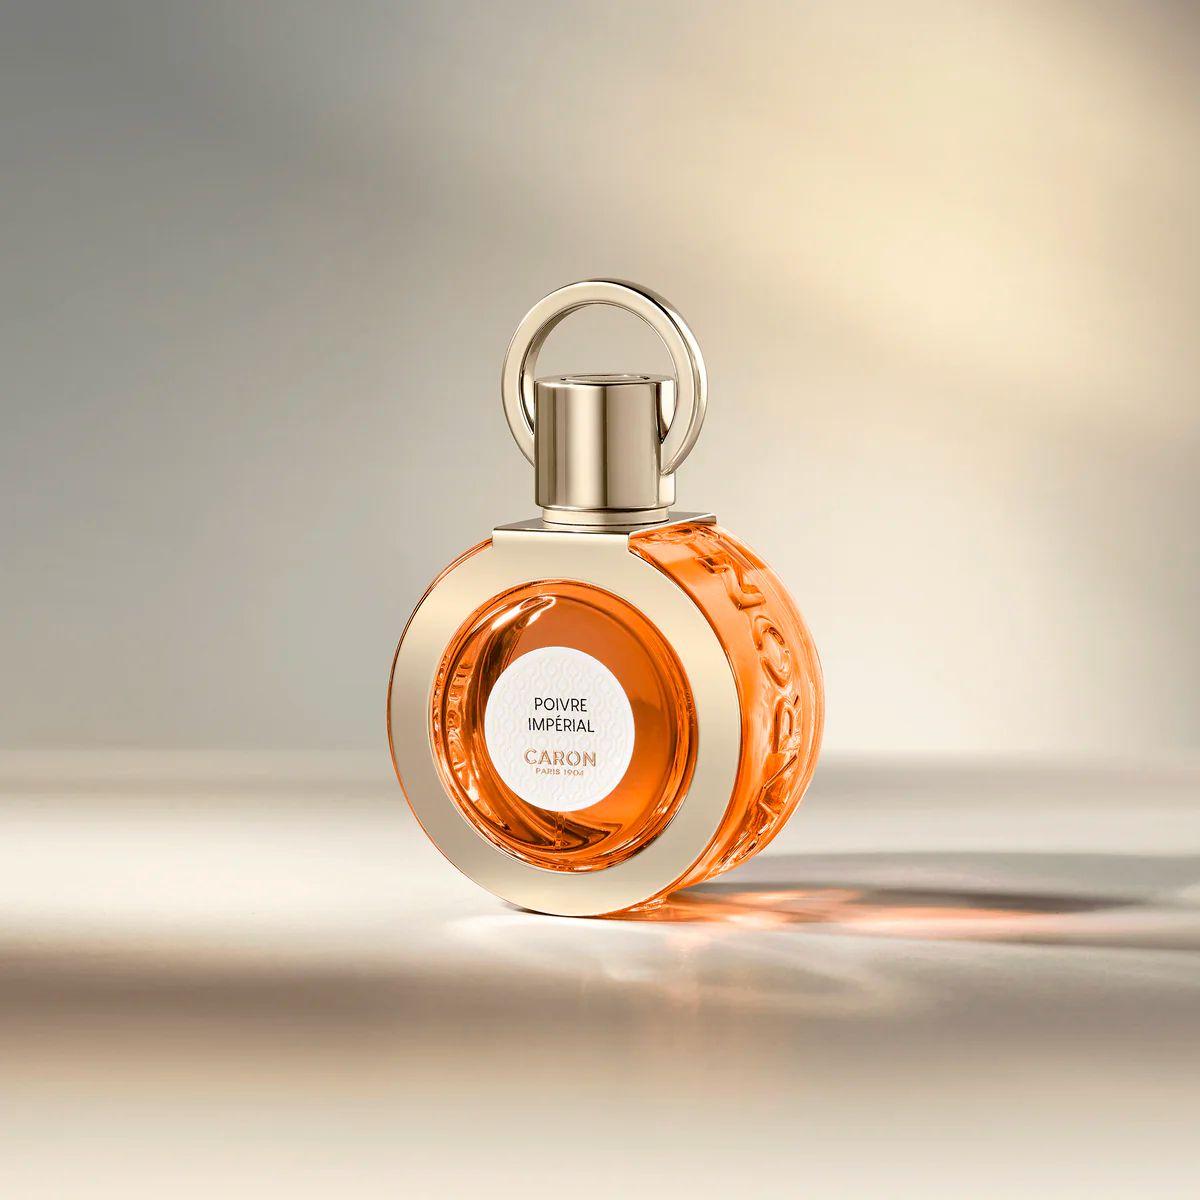 Caron - Poivre Imperial 50 ml | Perfume Lounge